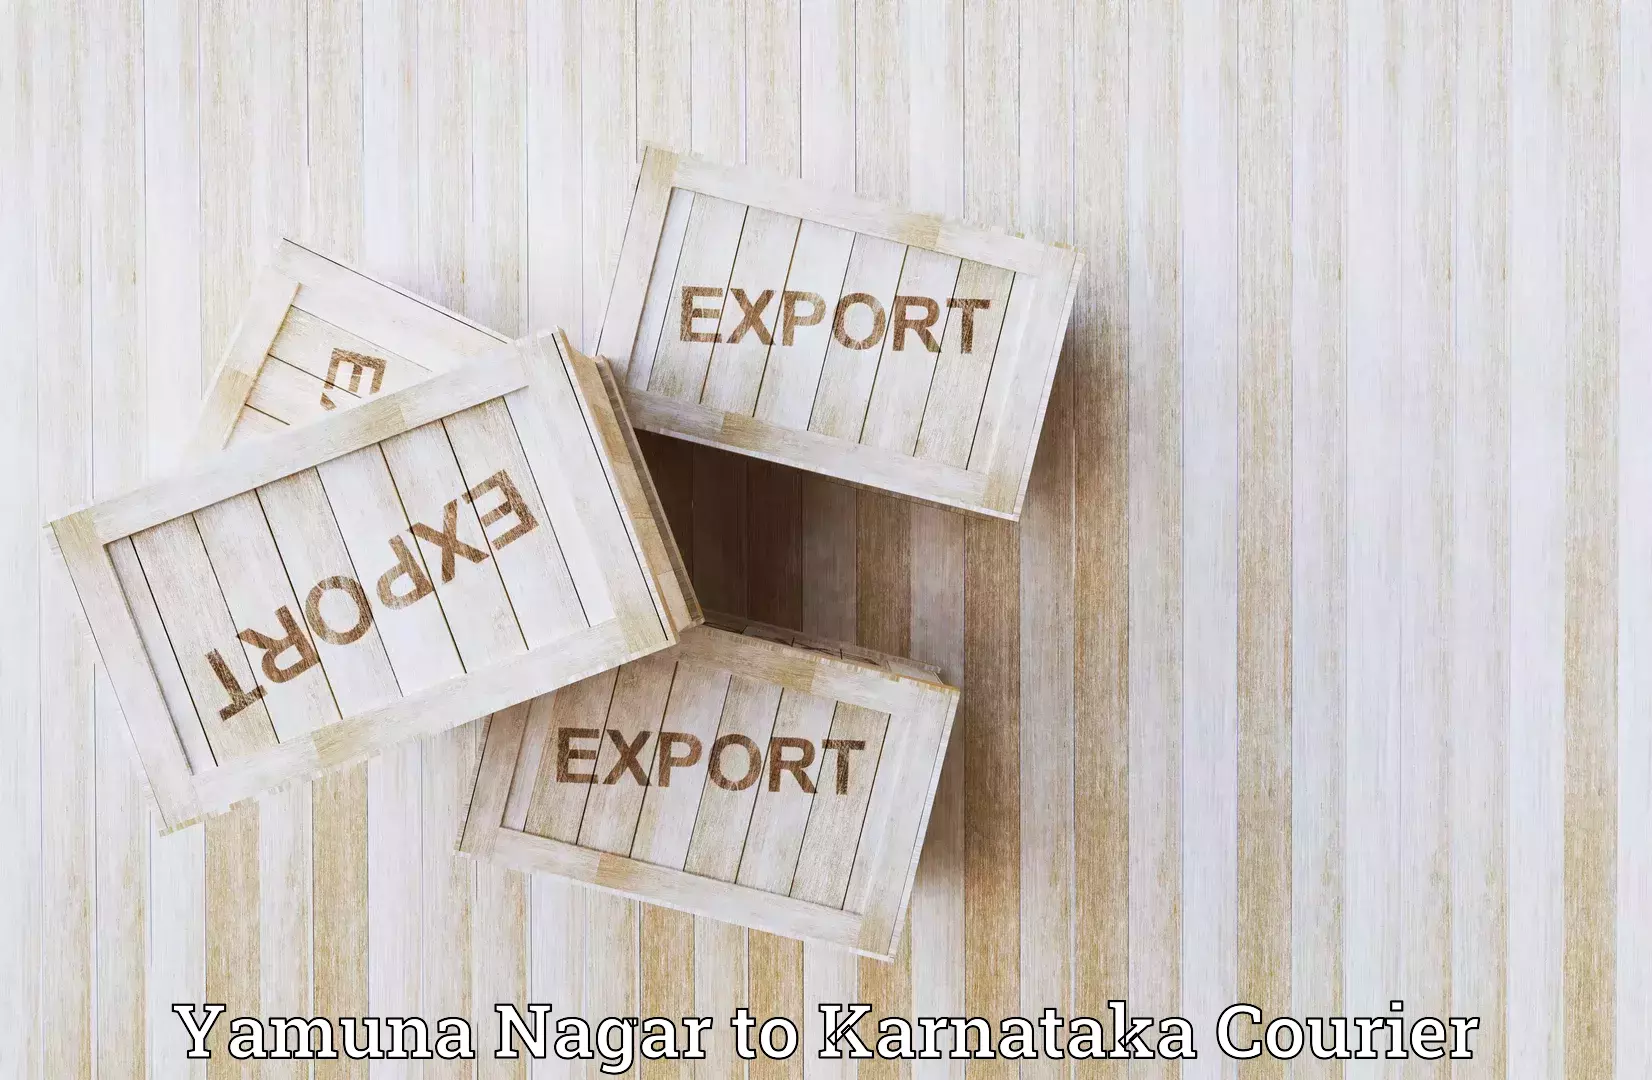 Express logistics service Yamuna Nagar to Dharwad